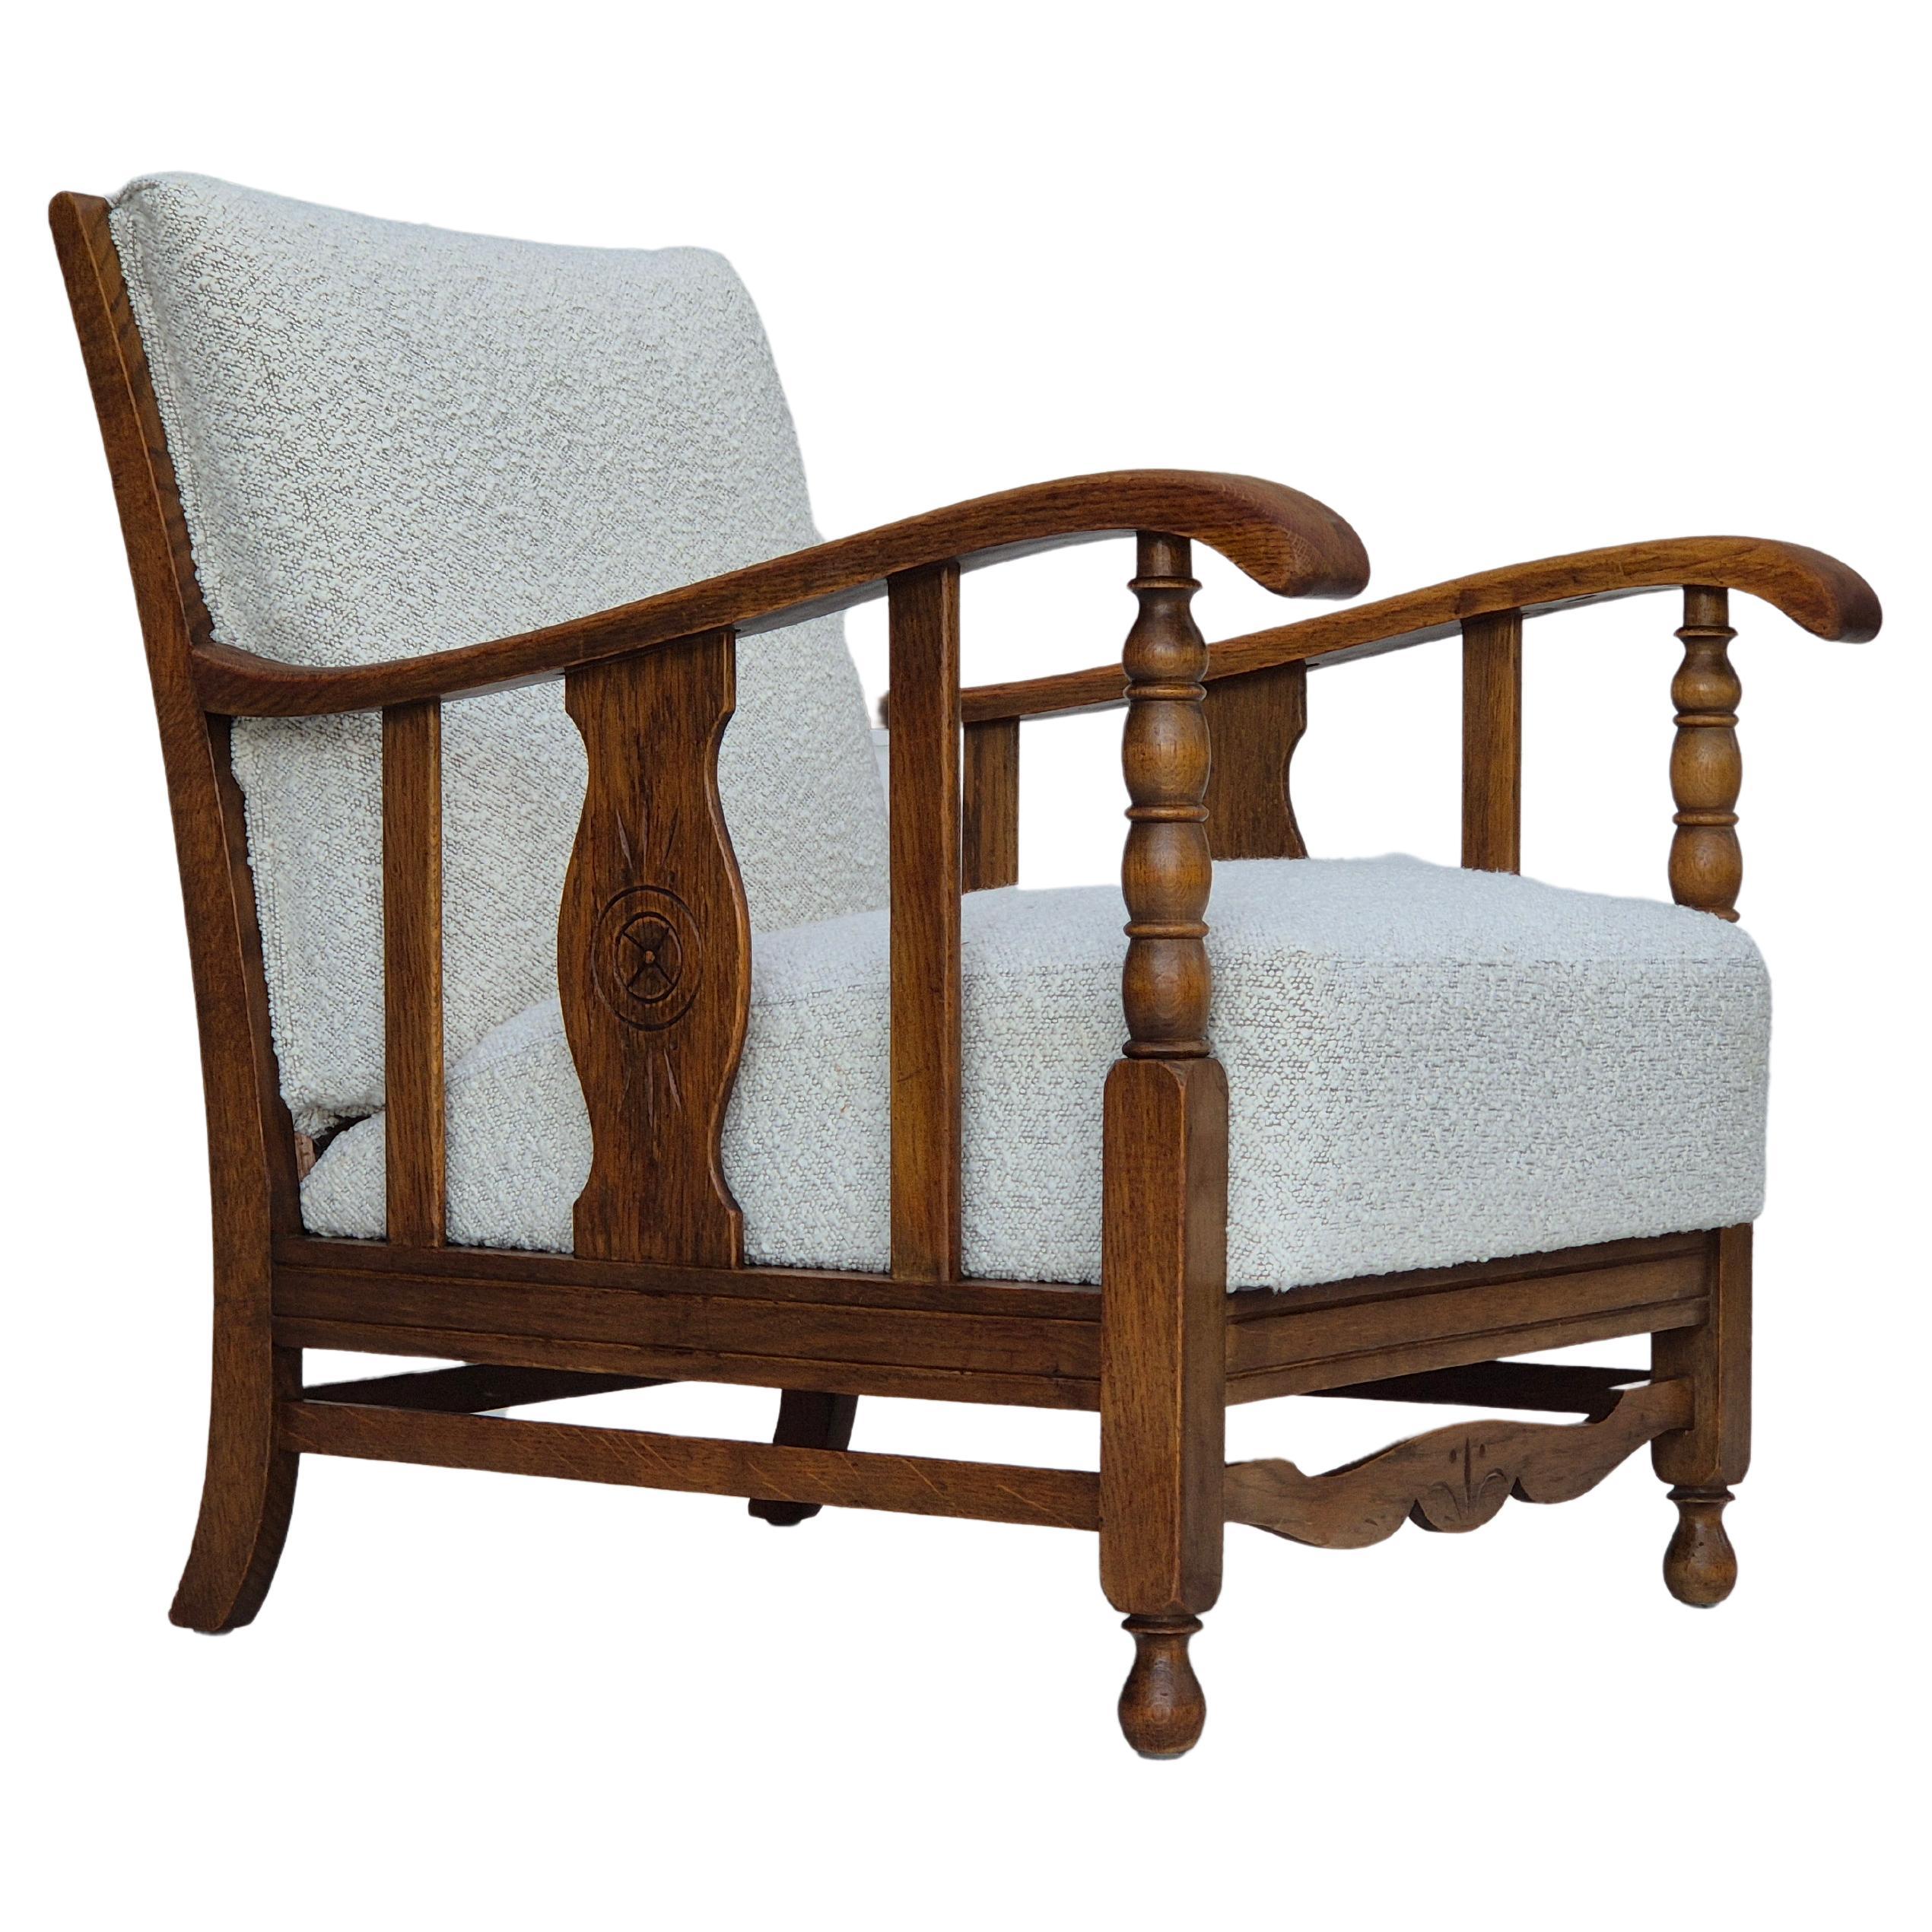 1950s, Scandinavian design, reupholstered armchair, fabric, oak wood.